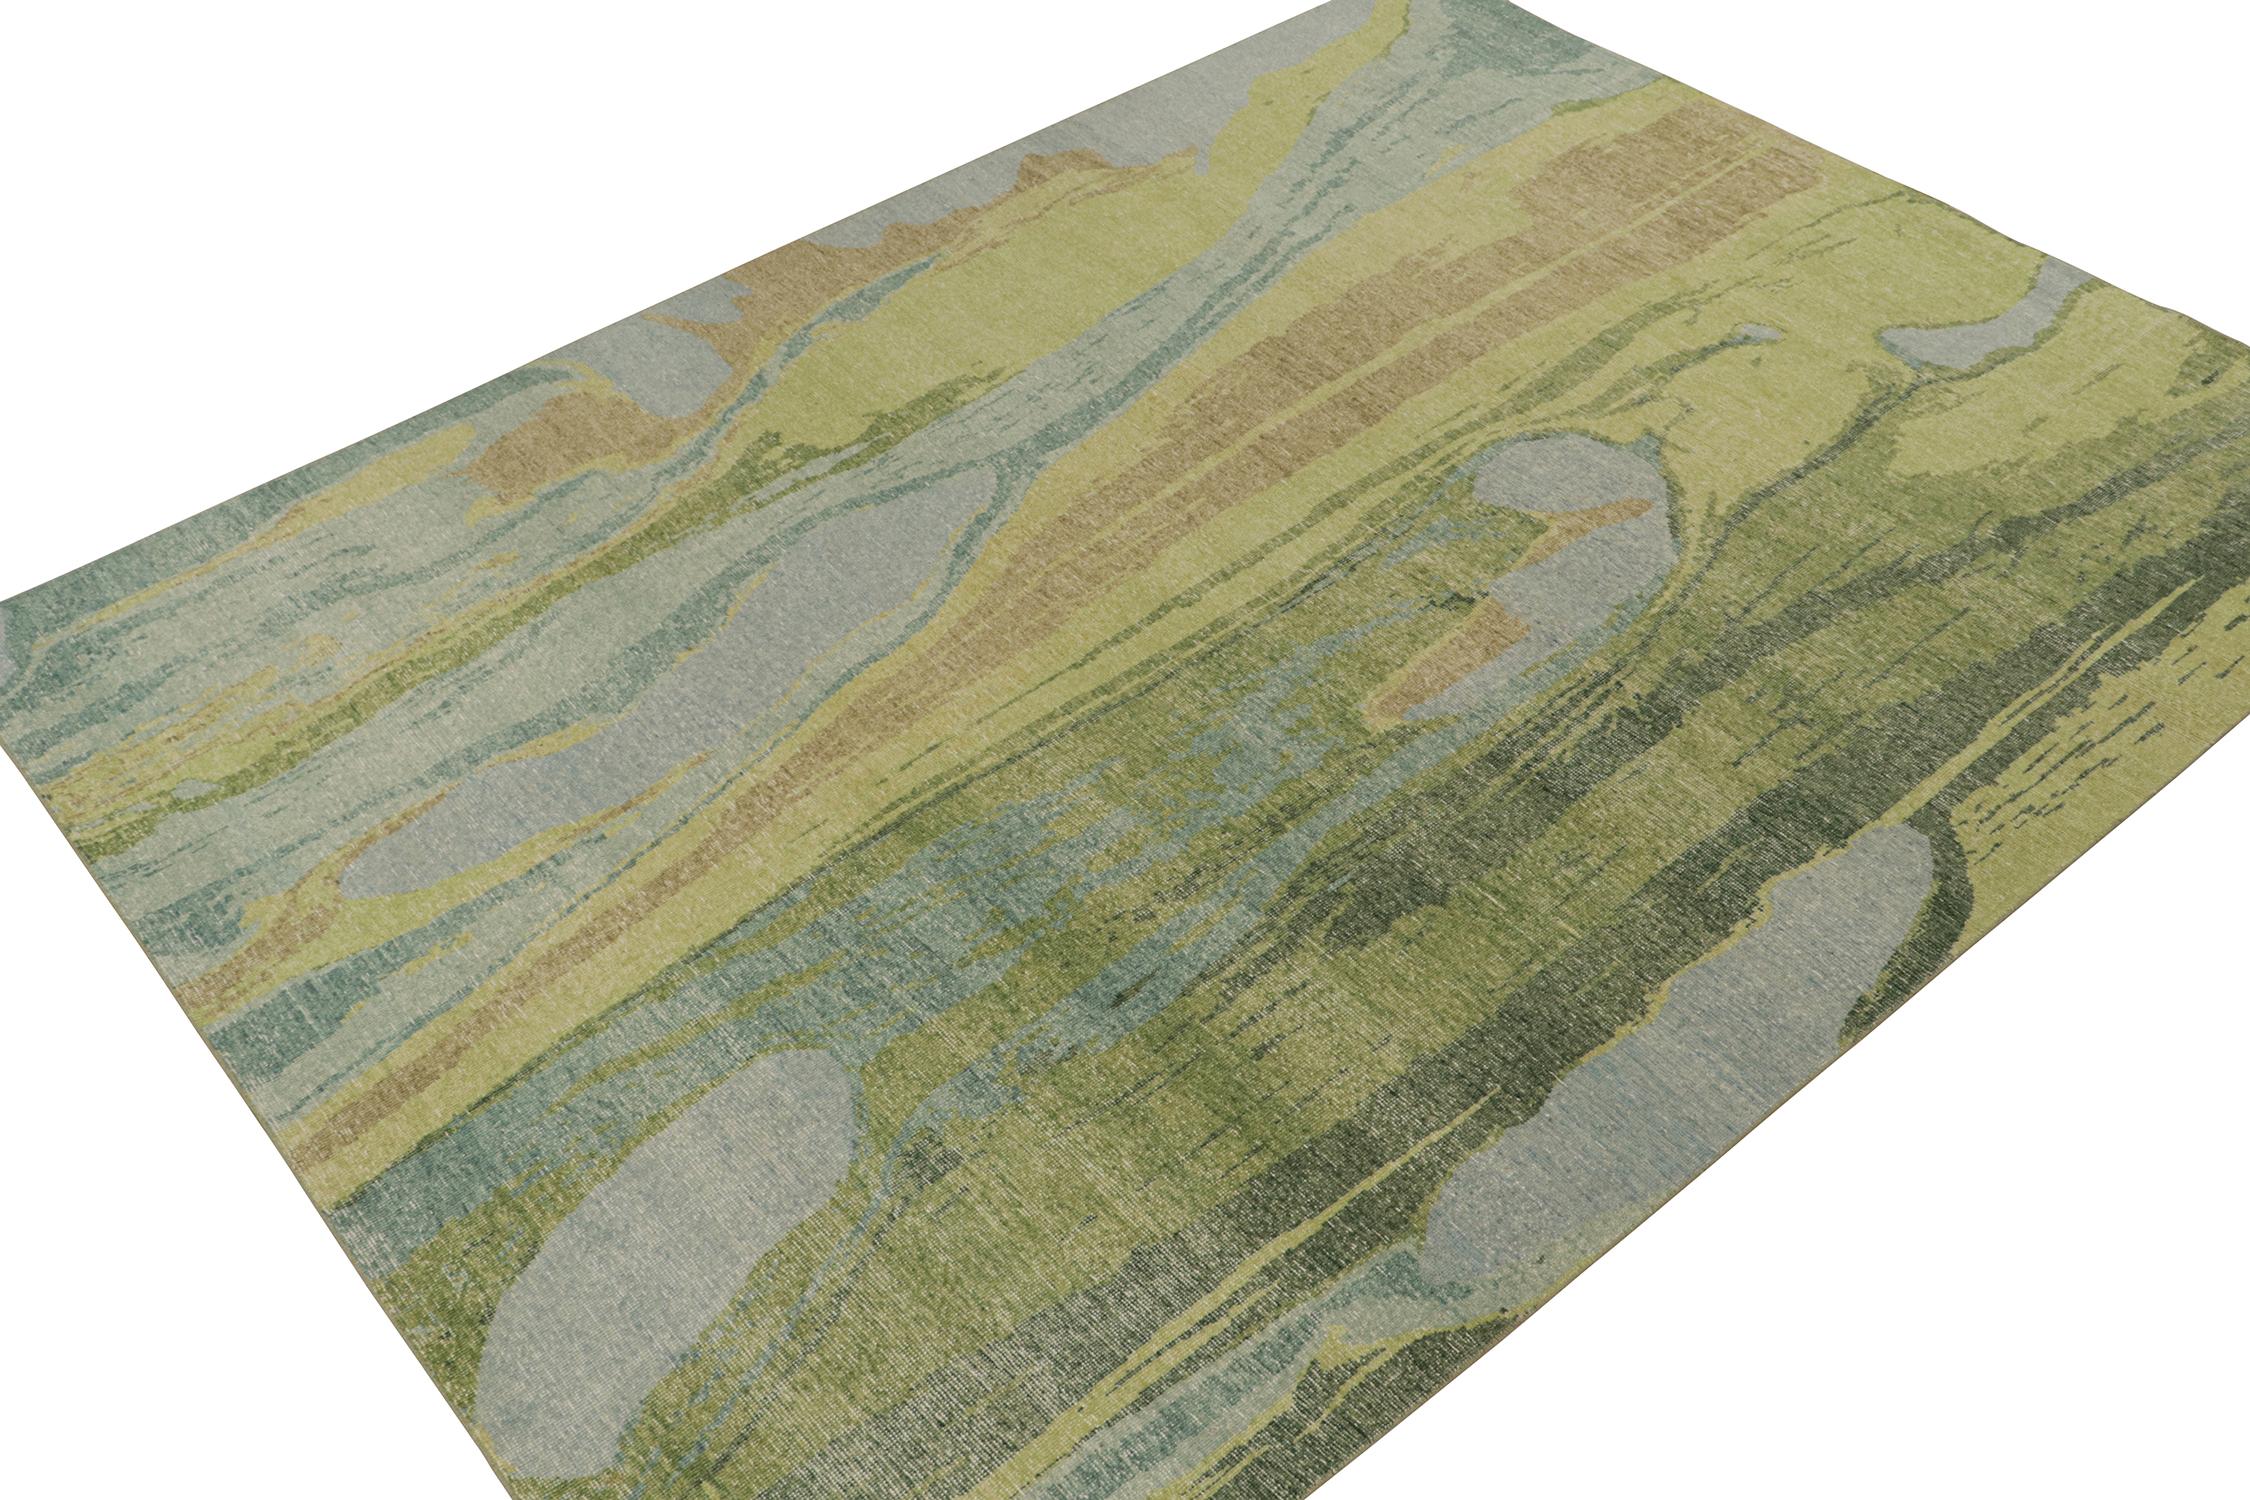 Ce tapis abstrait contemporain 9x12 est un nouvel ajout à la Collection Homage de Rug & Kilim.

Plus d'informations sur le design :

Noué à la main en laine et en coton, ce design évoque un jeu fluide de touches de peinture bleues, vertes, beiges et